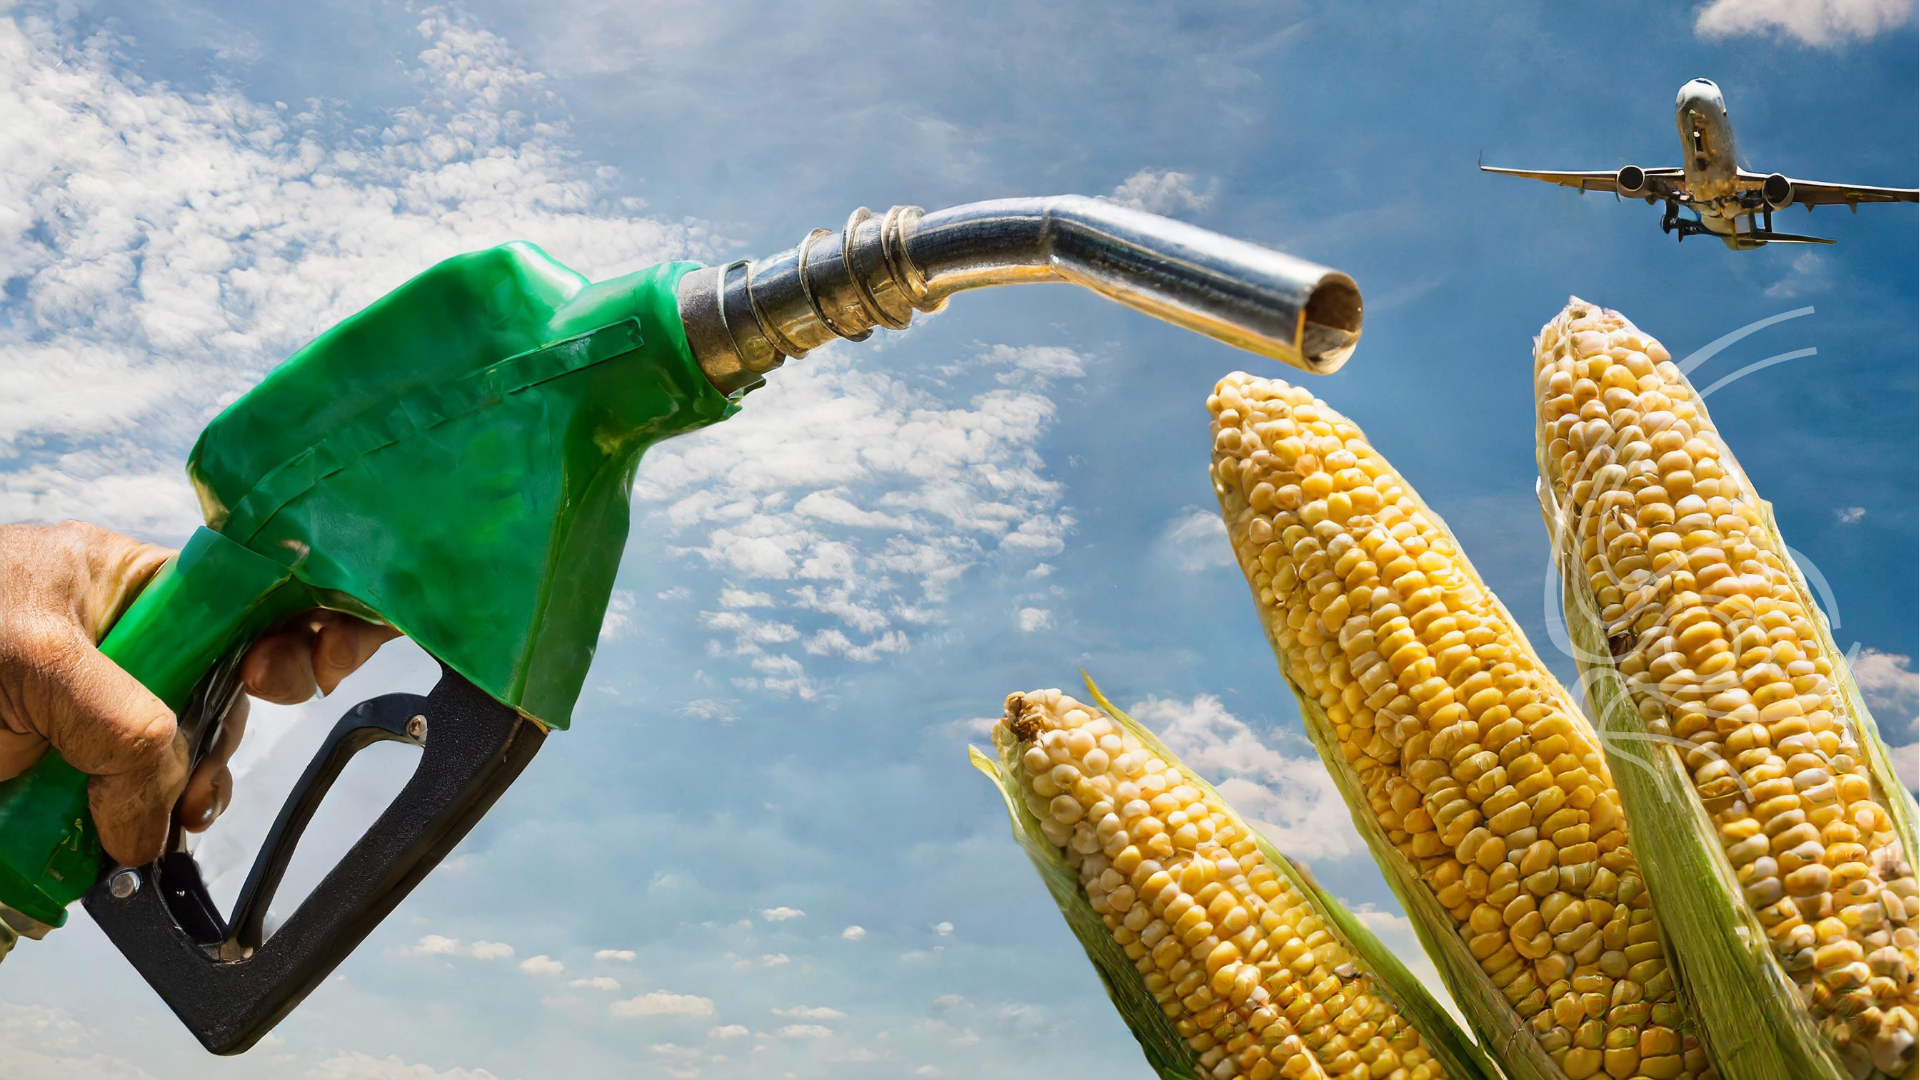 etanol-de-milho-da-fs-recebe-certificado-inedito-para-combustivel-de-aviacao-saf